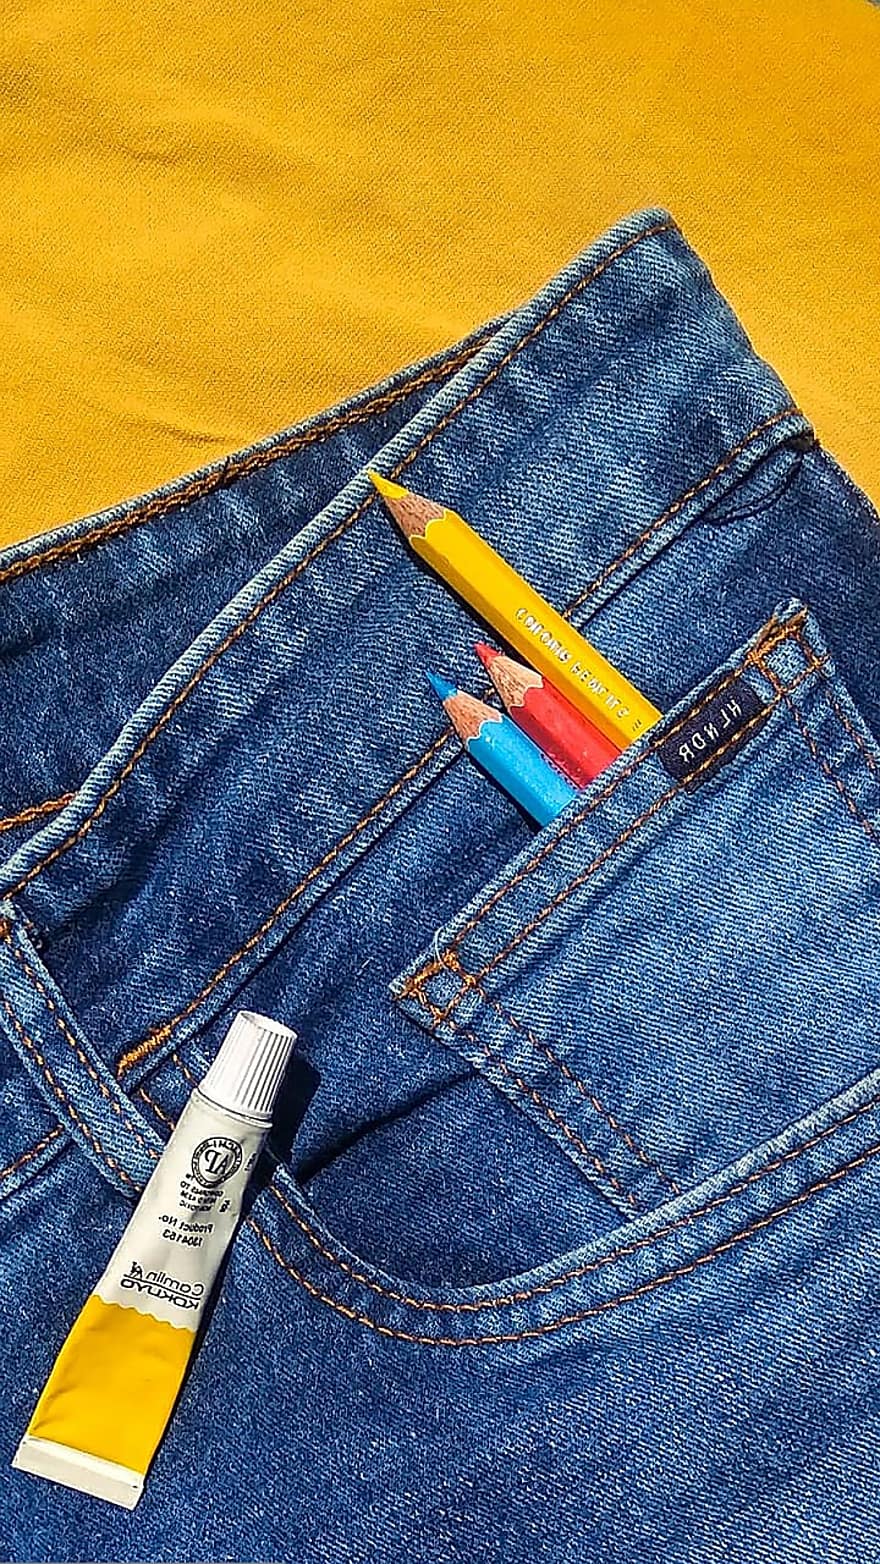 jeans, färgade pennor, måla, färgrör, denim, mode, stil, färgrik